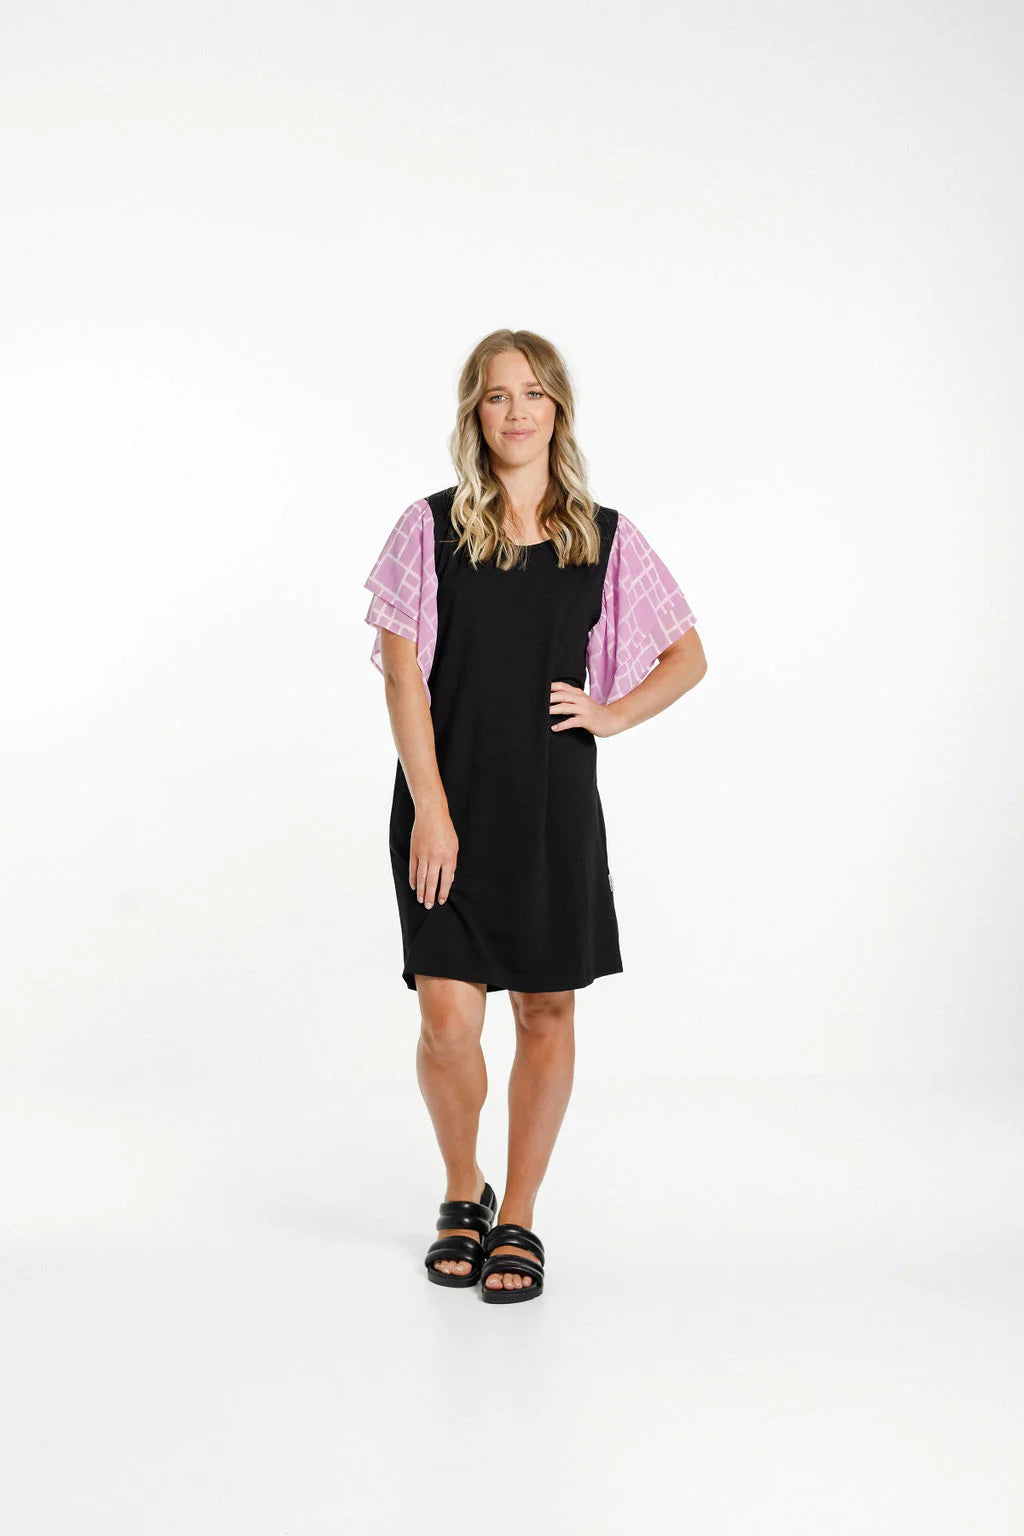 Homelee Lola Dress - Black with Pink Bloom Print Sleeves